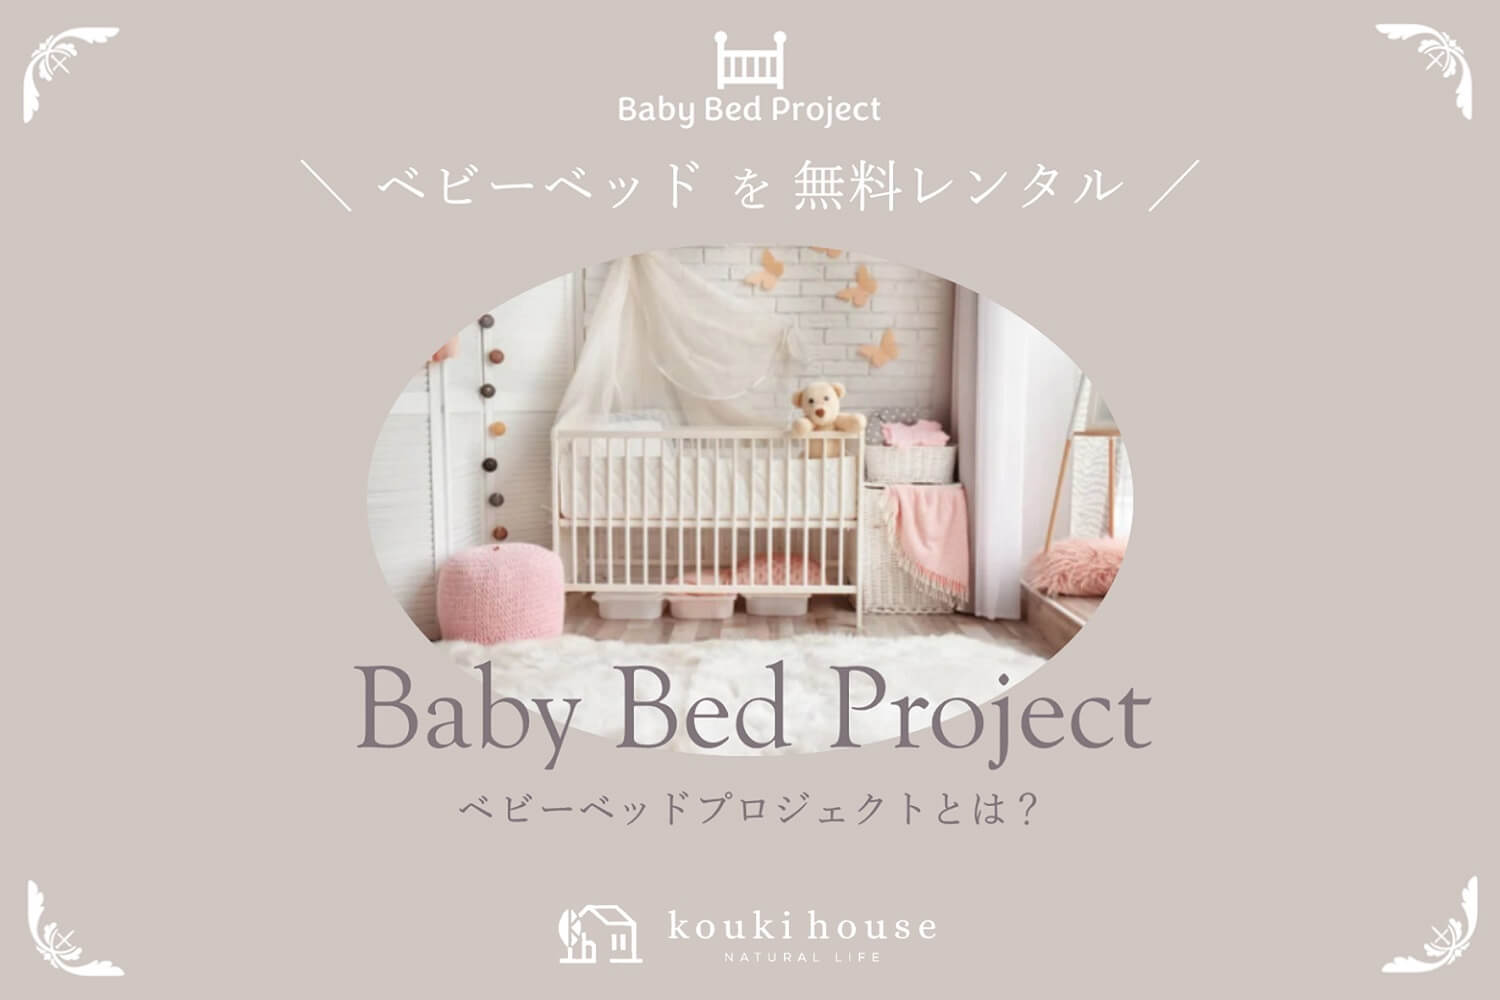 松阪市 熊野市へ地域貢献したい幸輝ハウスのベビーベッドプロジェクト　BBPとは？